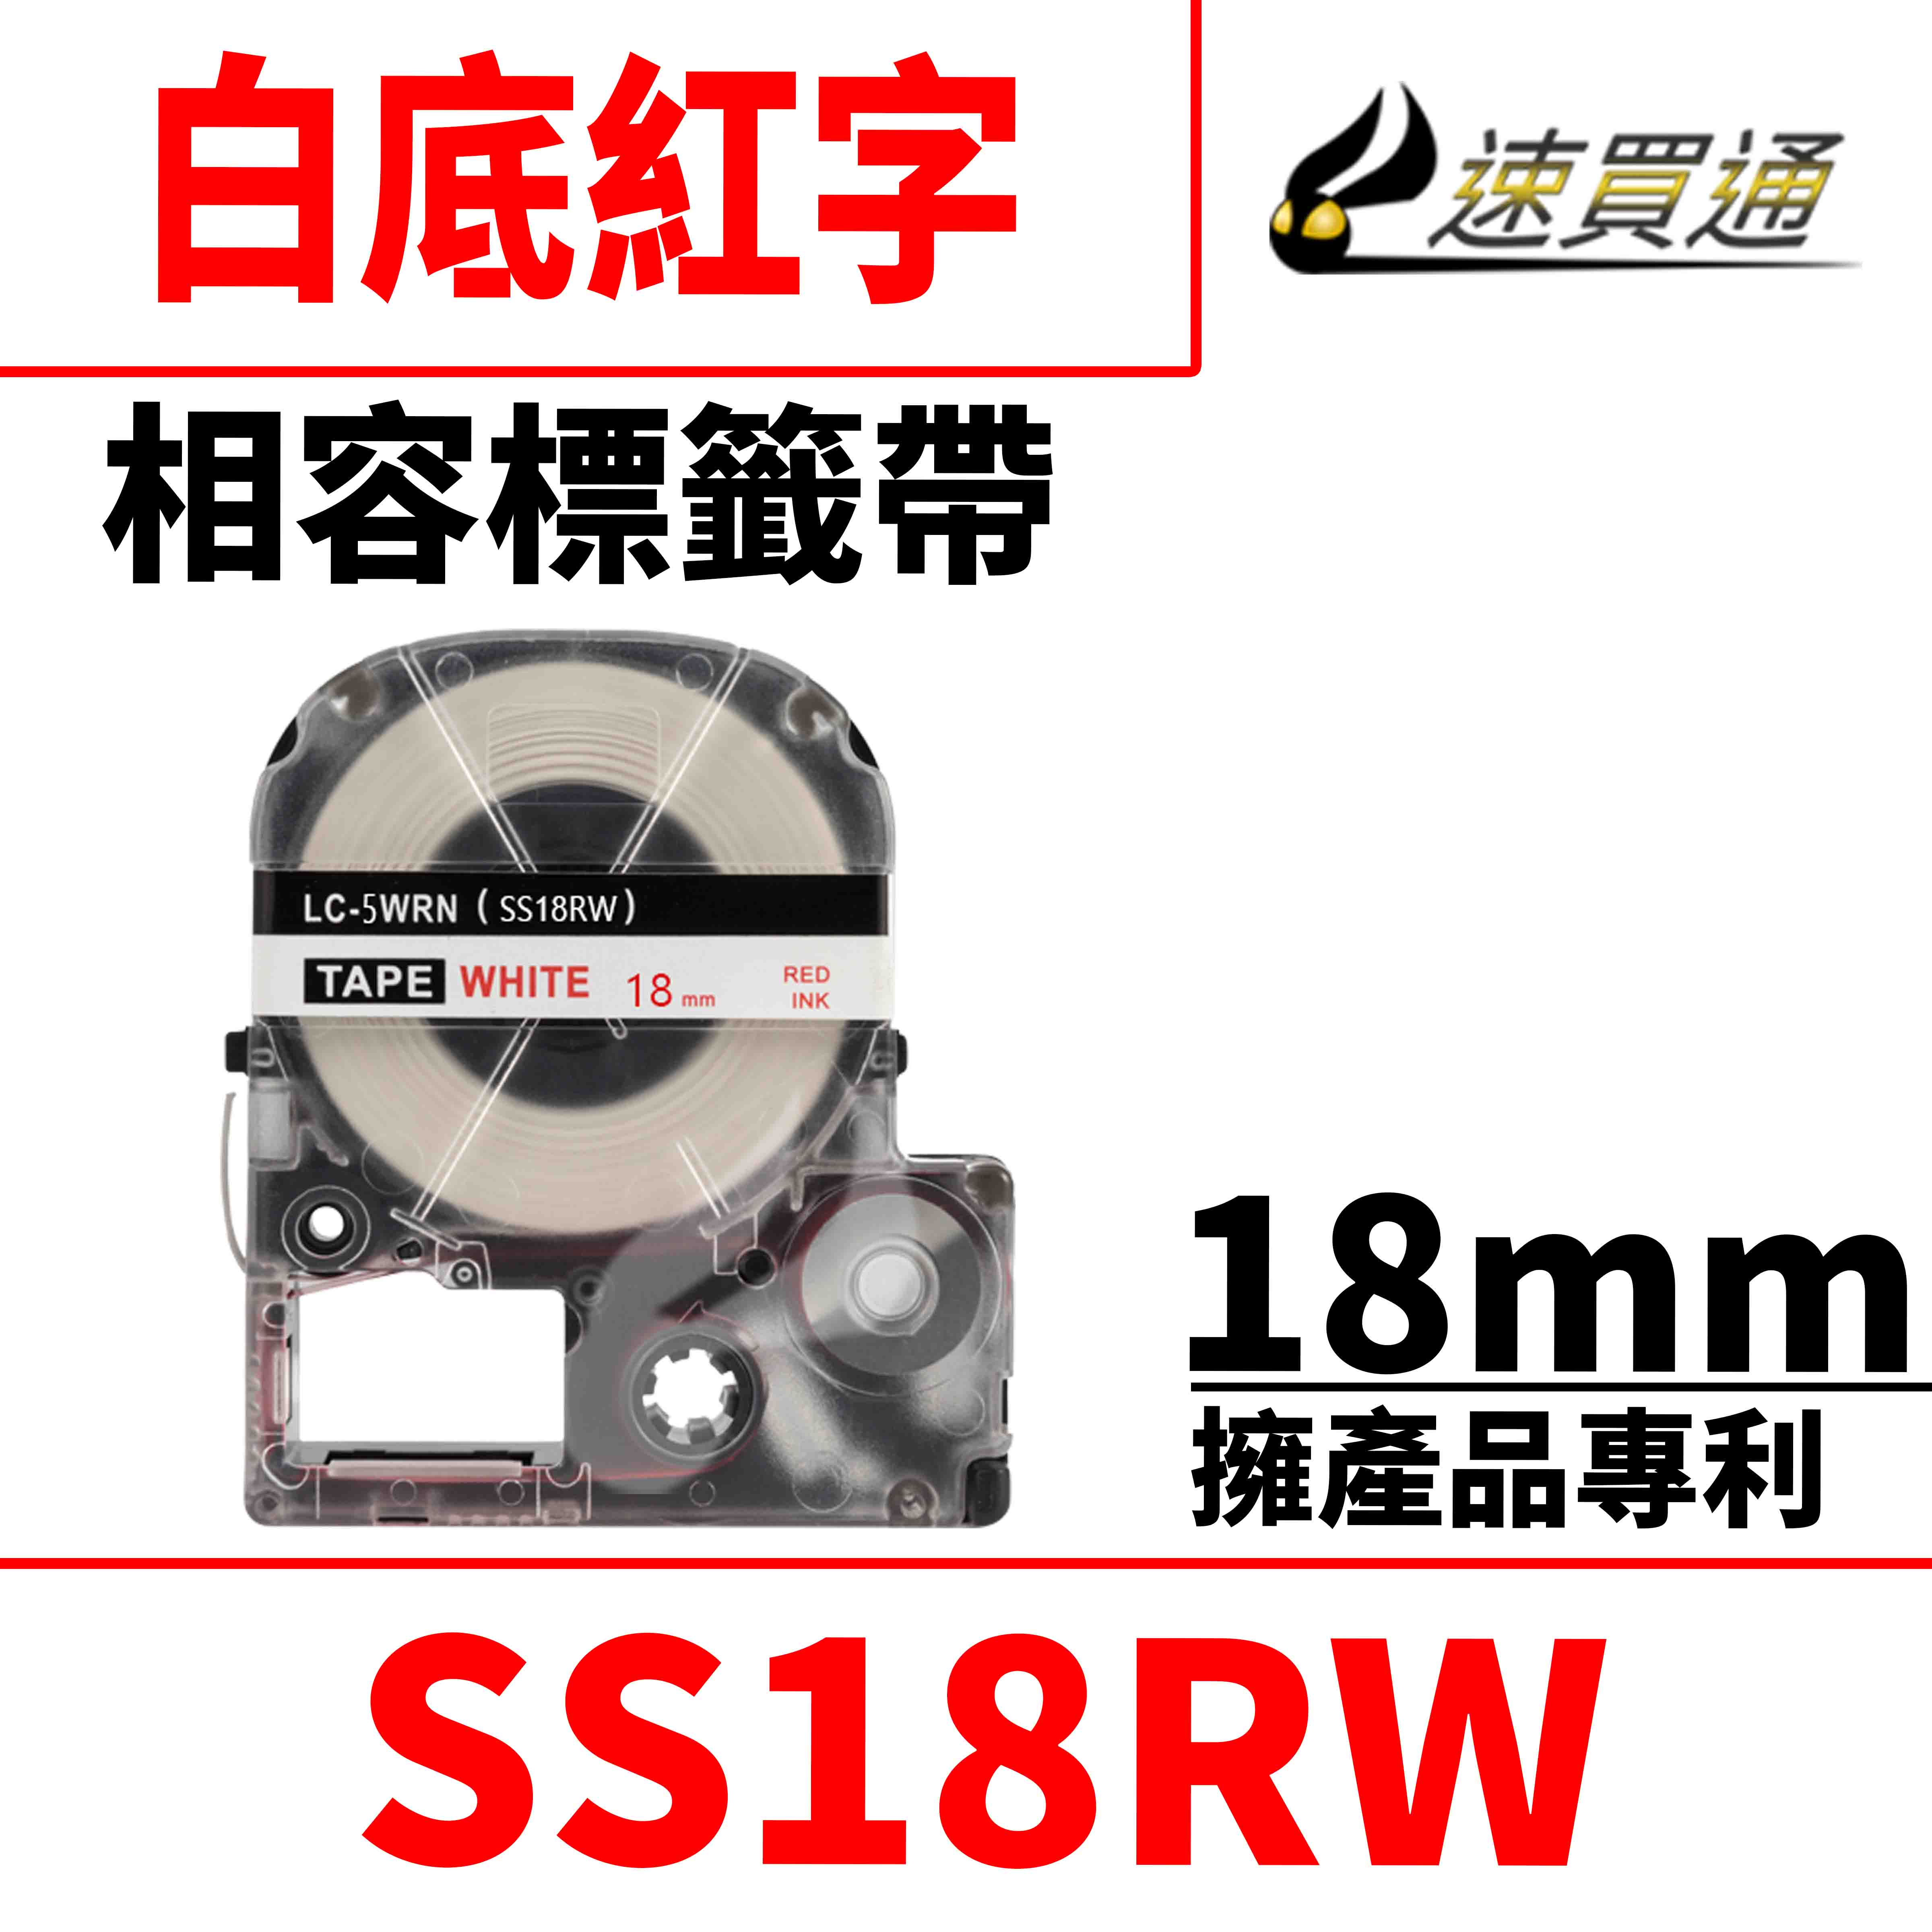 【速買通】EPSON LC-5WRN/LK-5WRN/SS18RW/白底紅字/18mmx8m 相容標籤帶